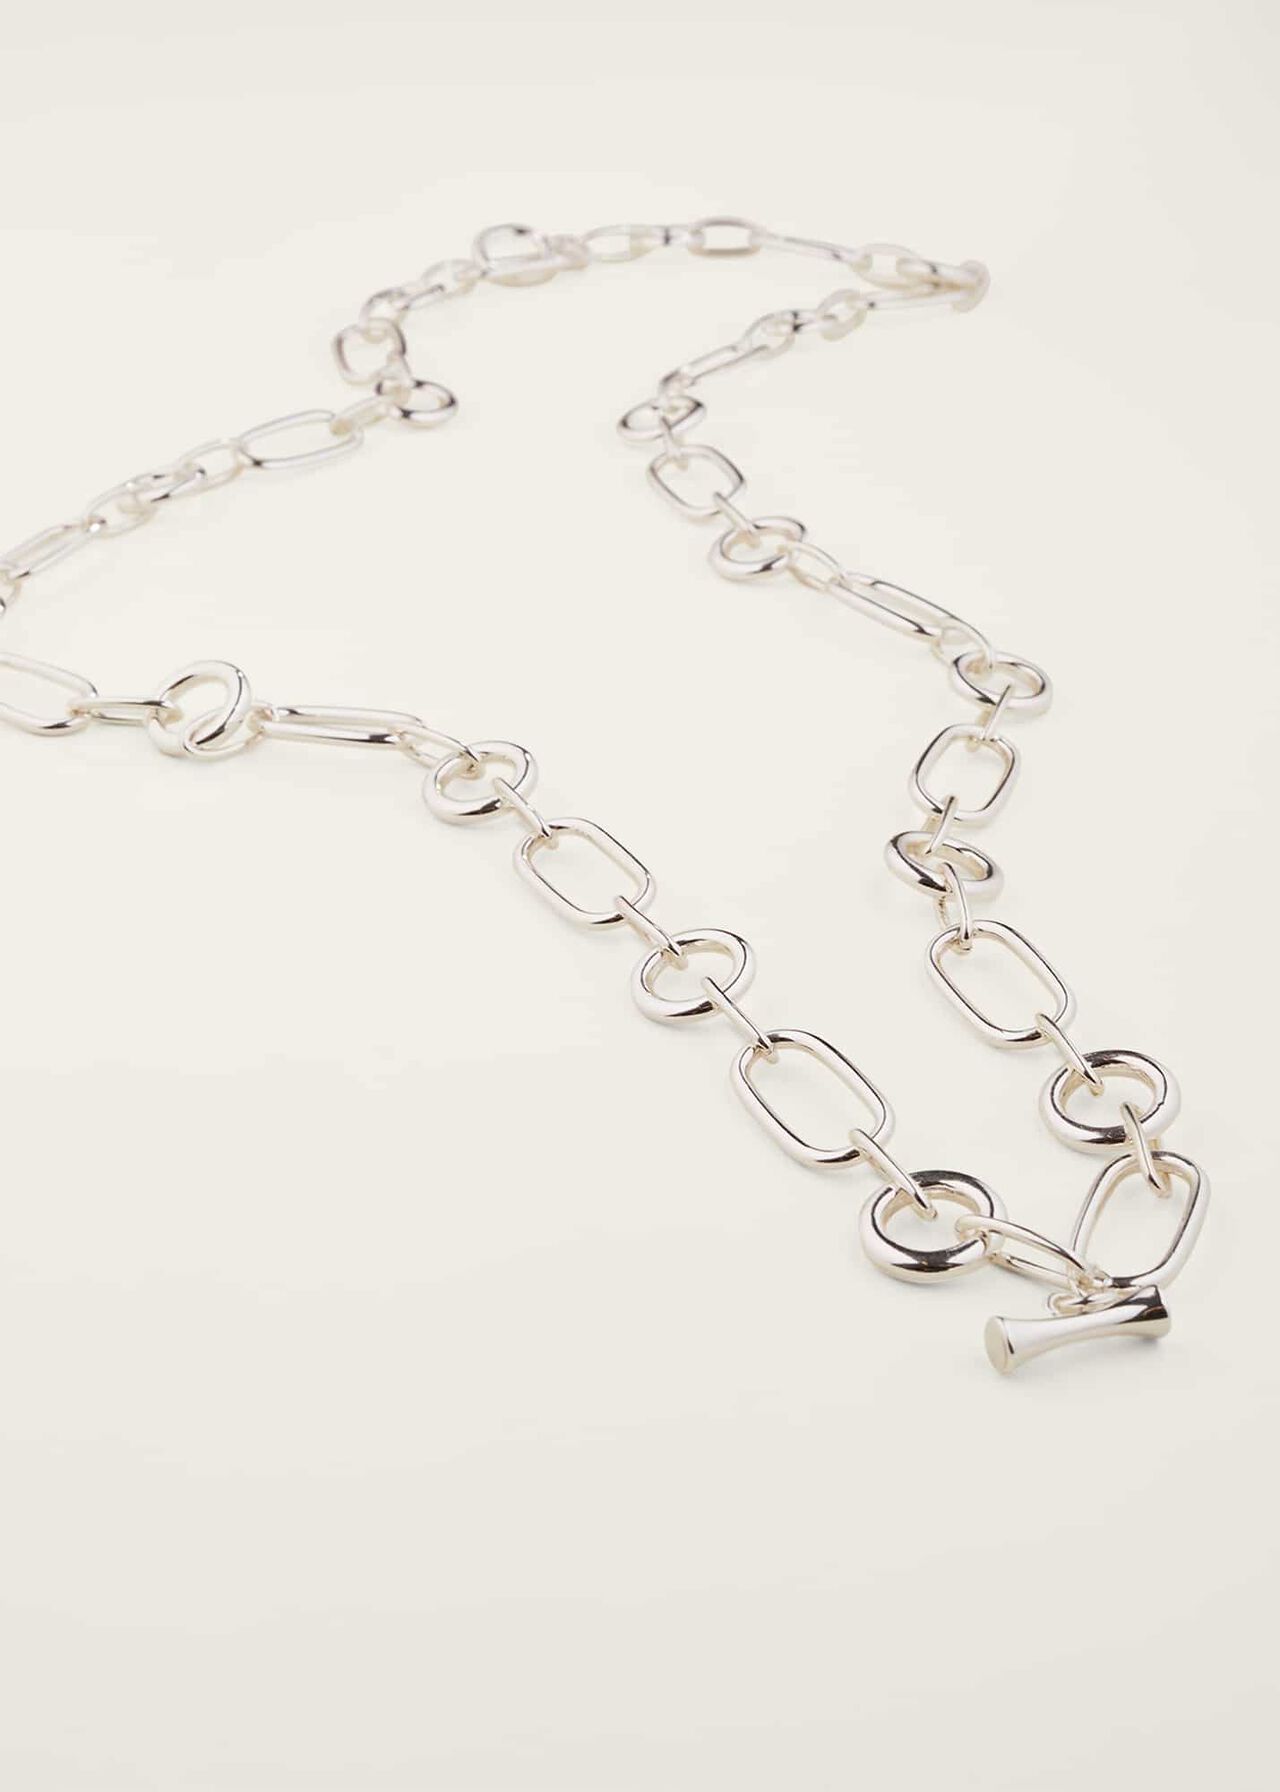 Miranda Silver Chain Necklace